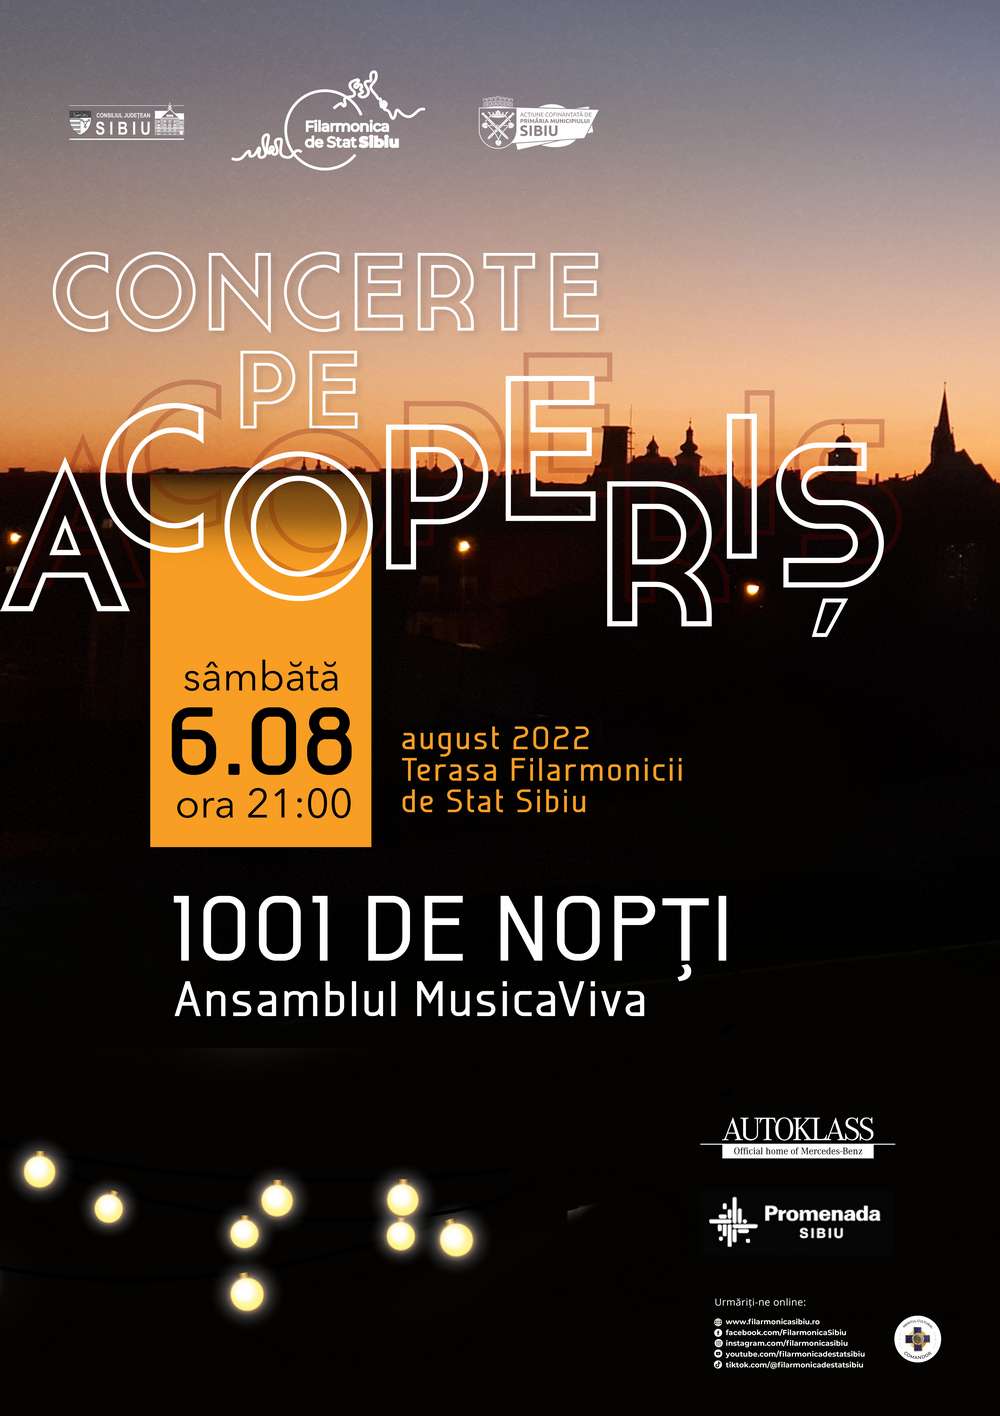 1001 de Nopți - Ansamblul Musica Viva @ Concerte pe Acoperiș